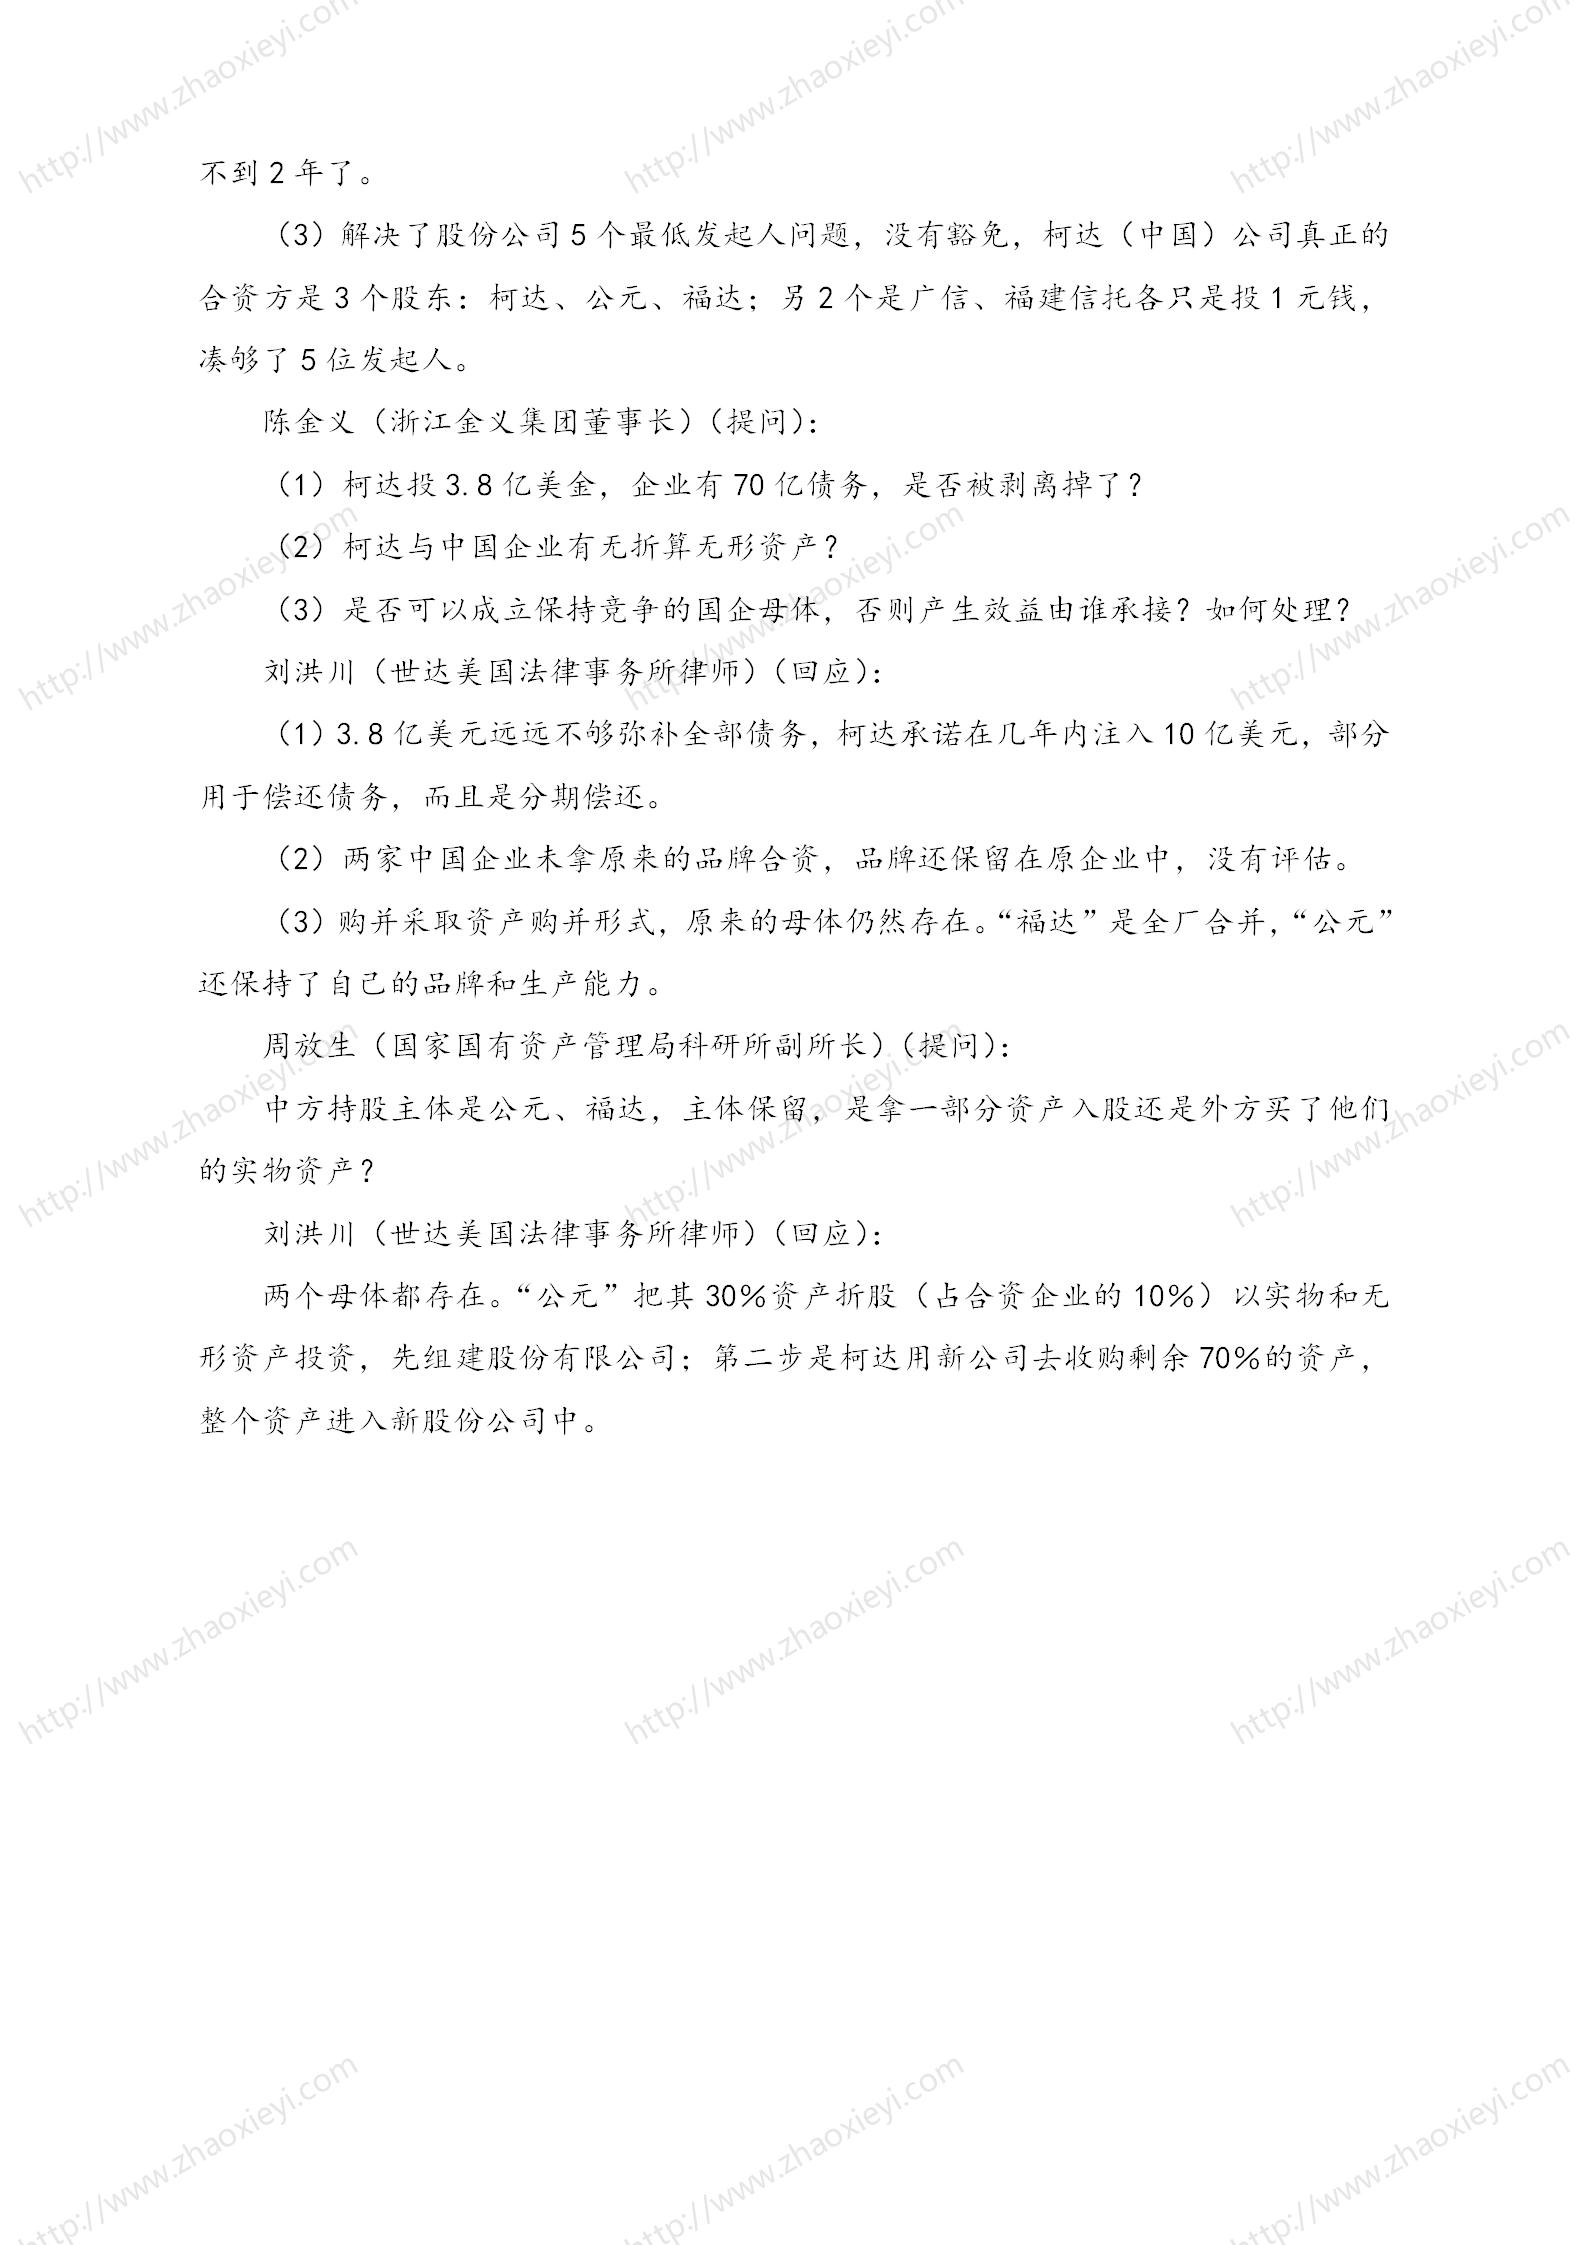 中国企业并购经典案例_165.jpg